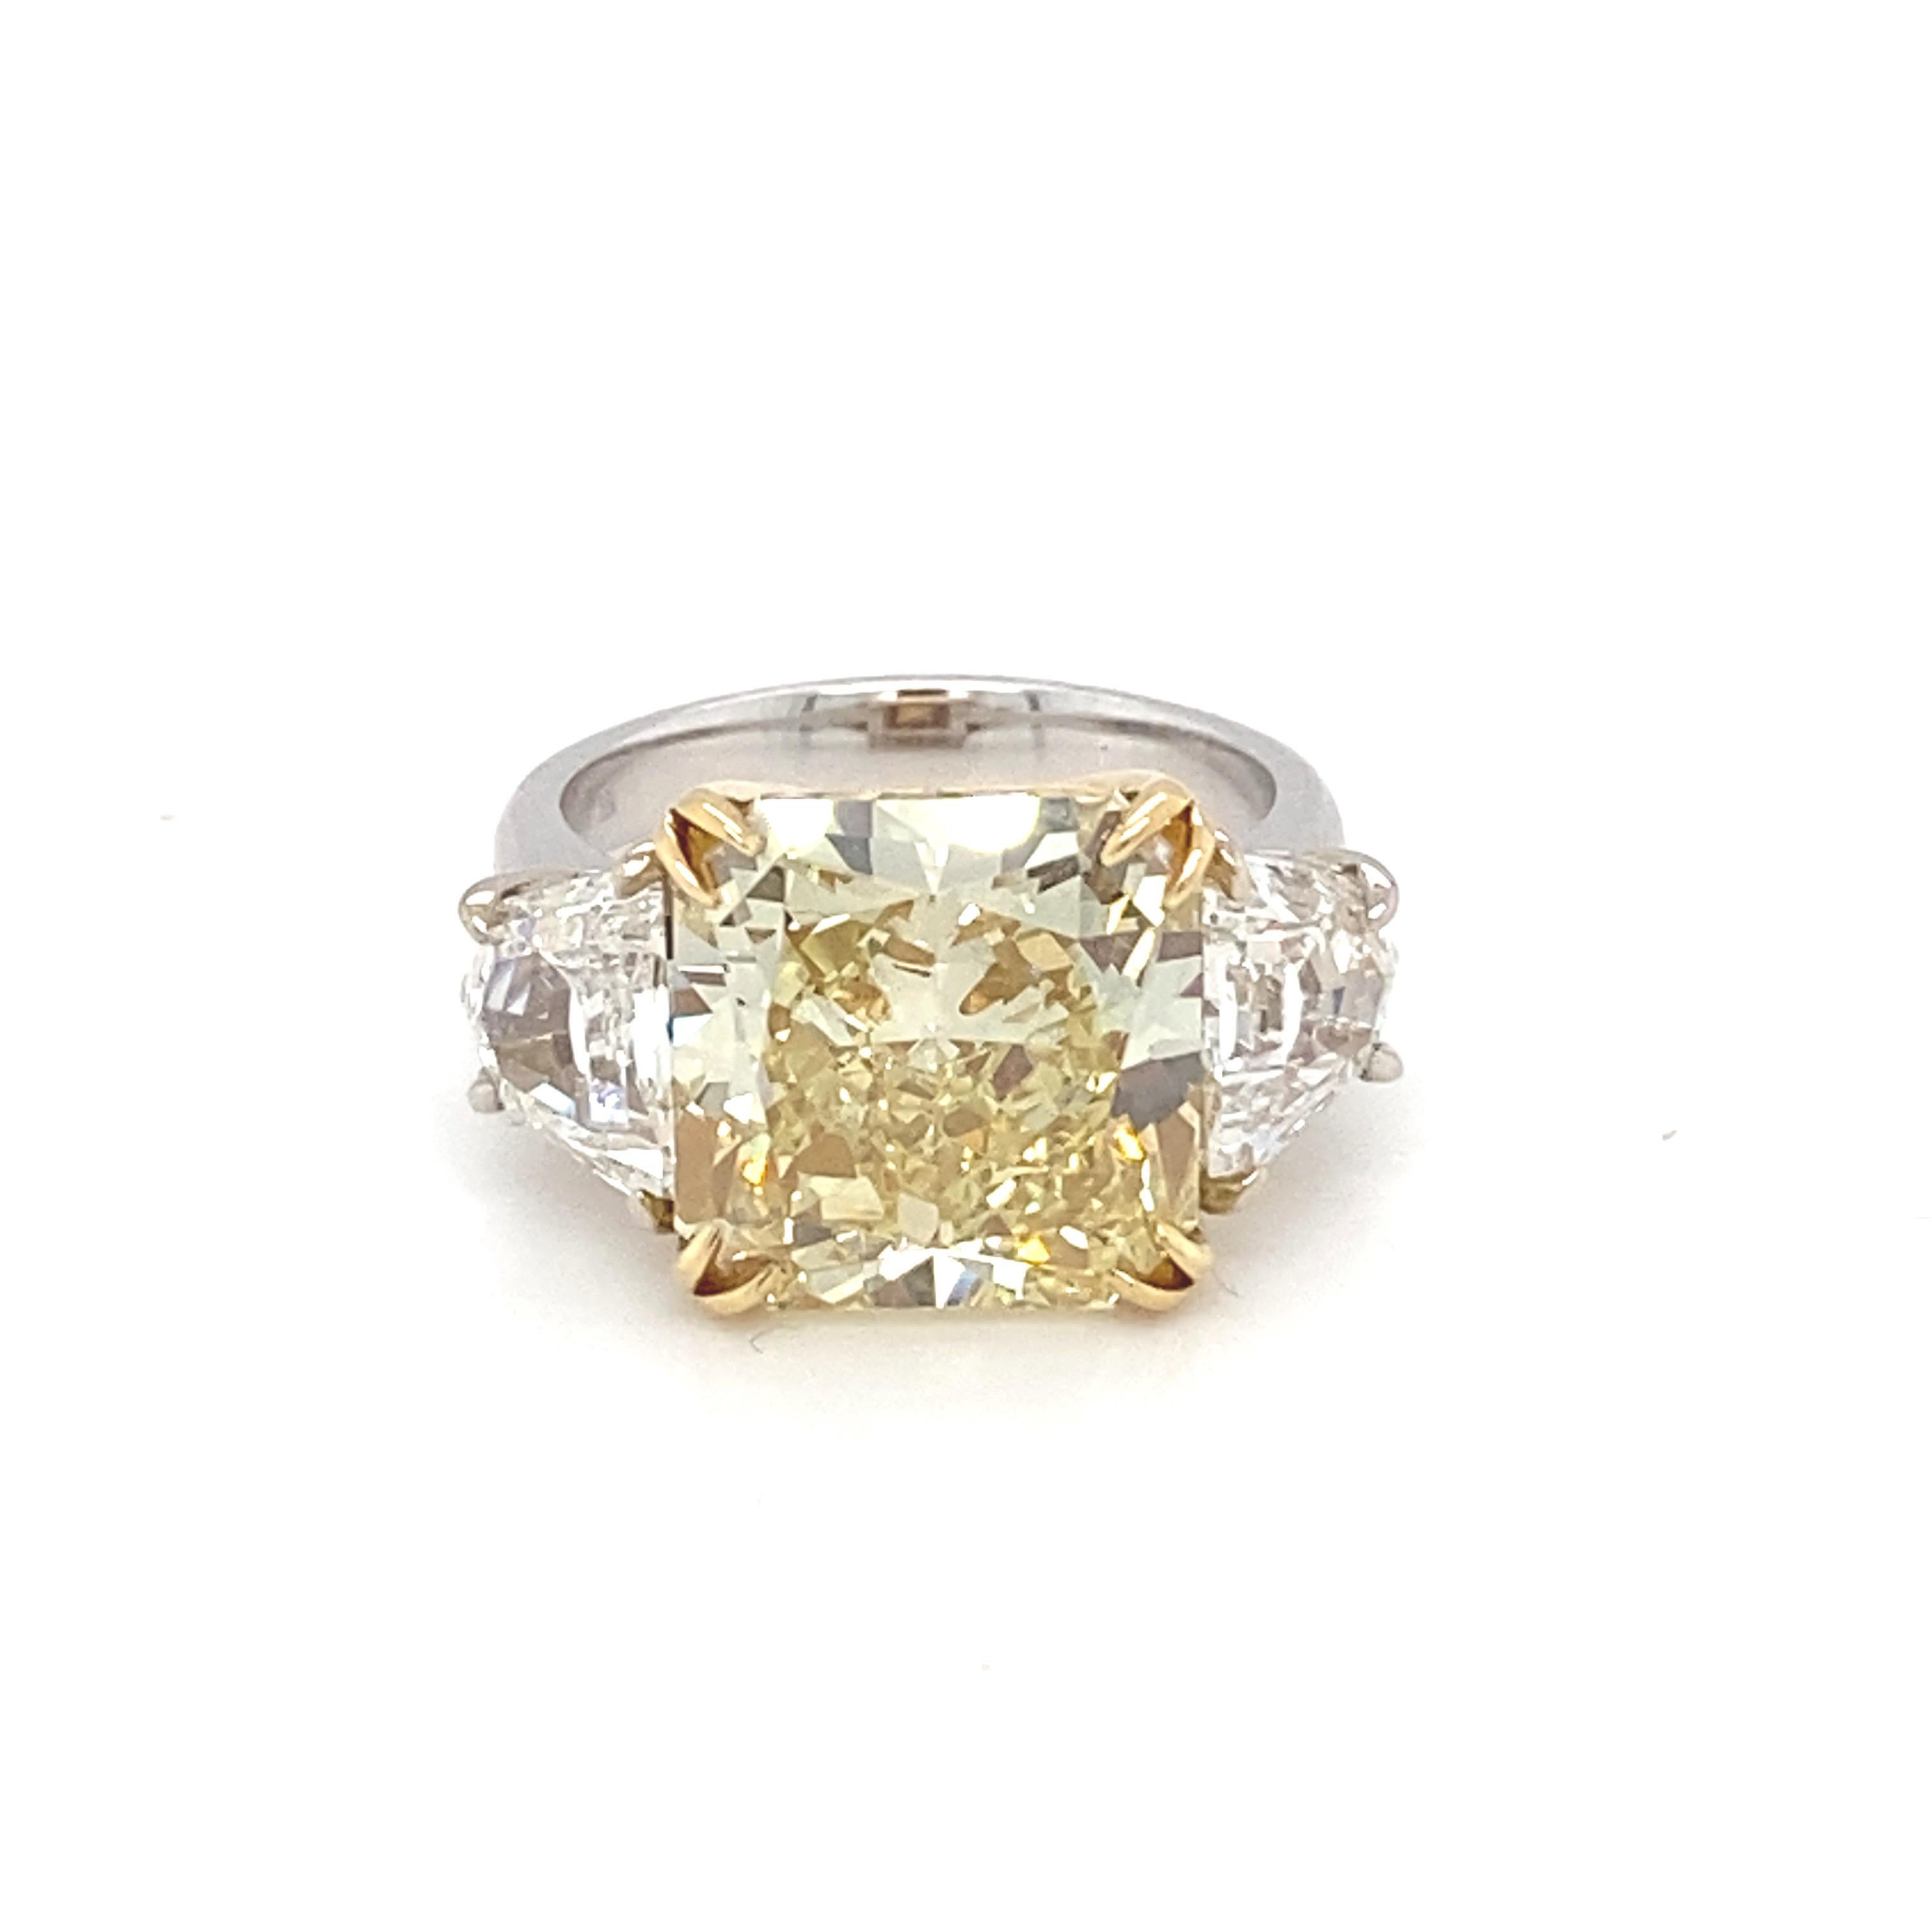 Dieser prächtige Ring rühmt sich mit einem GIA-zertifizierten 10,03 Karat Fancy Intense Yellow Kissenschliff-Diamanten als Mittelstein mit zwei trapezförmigen weißen Diamanten als Seitenstein. Der Mittelstein ist in Gelbgold gefasst, während die